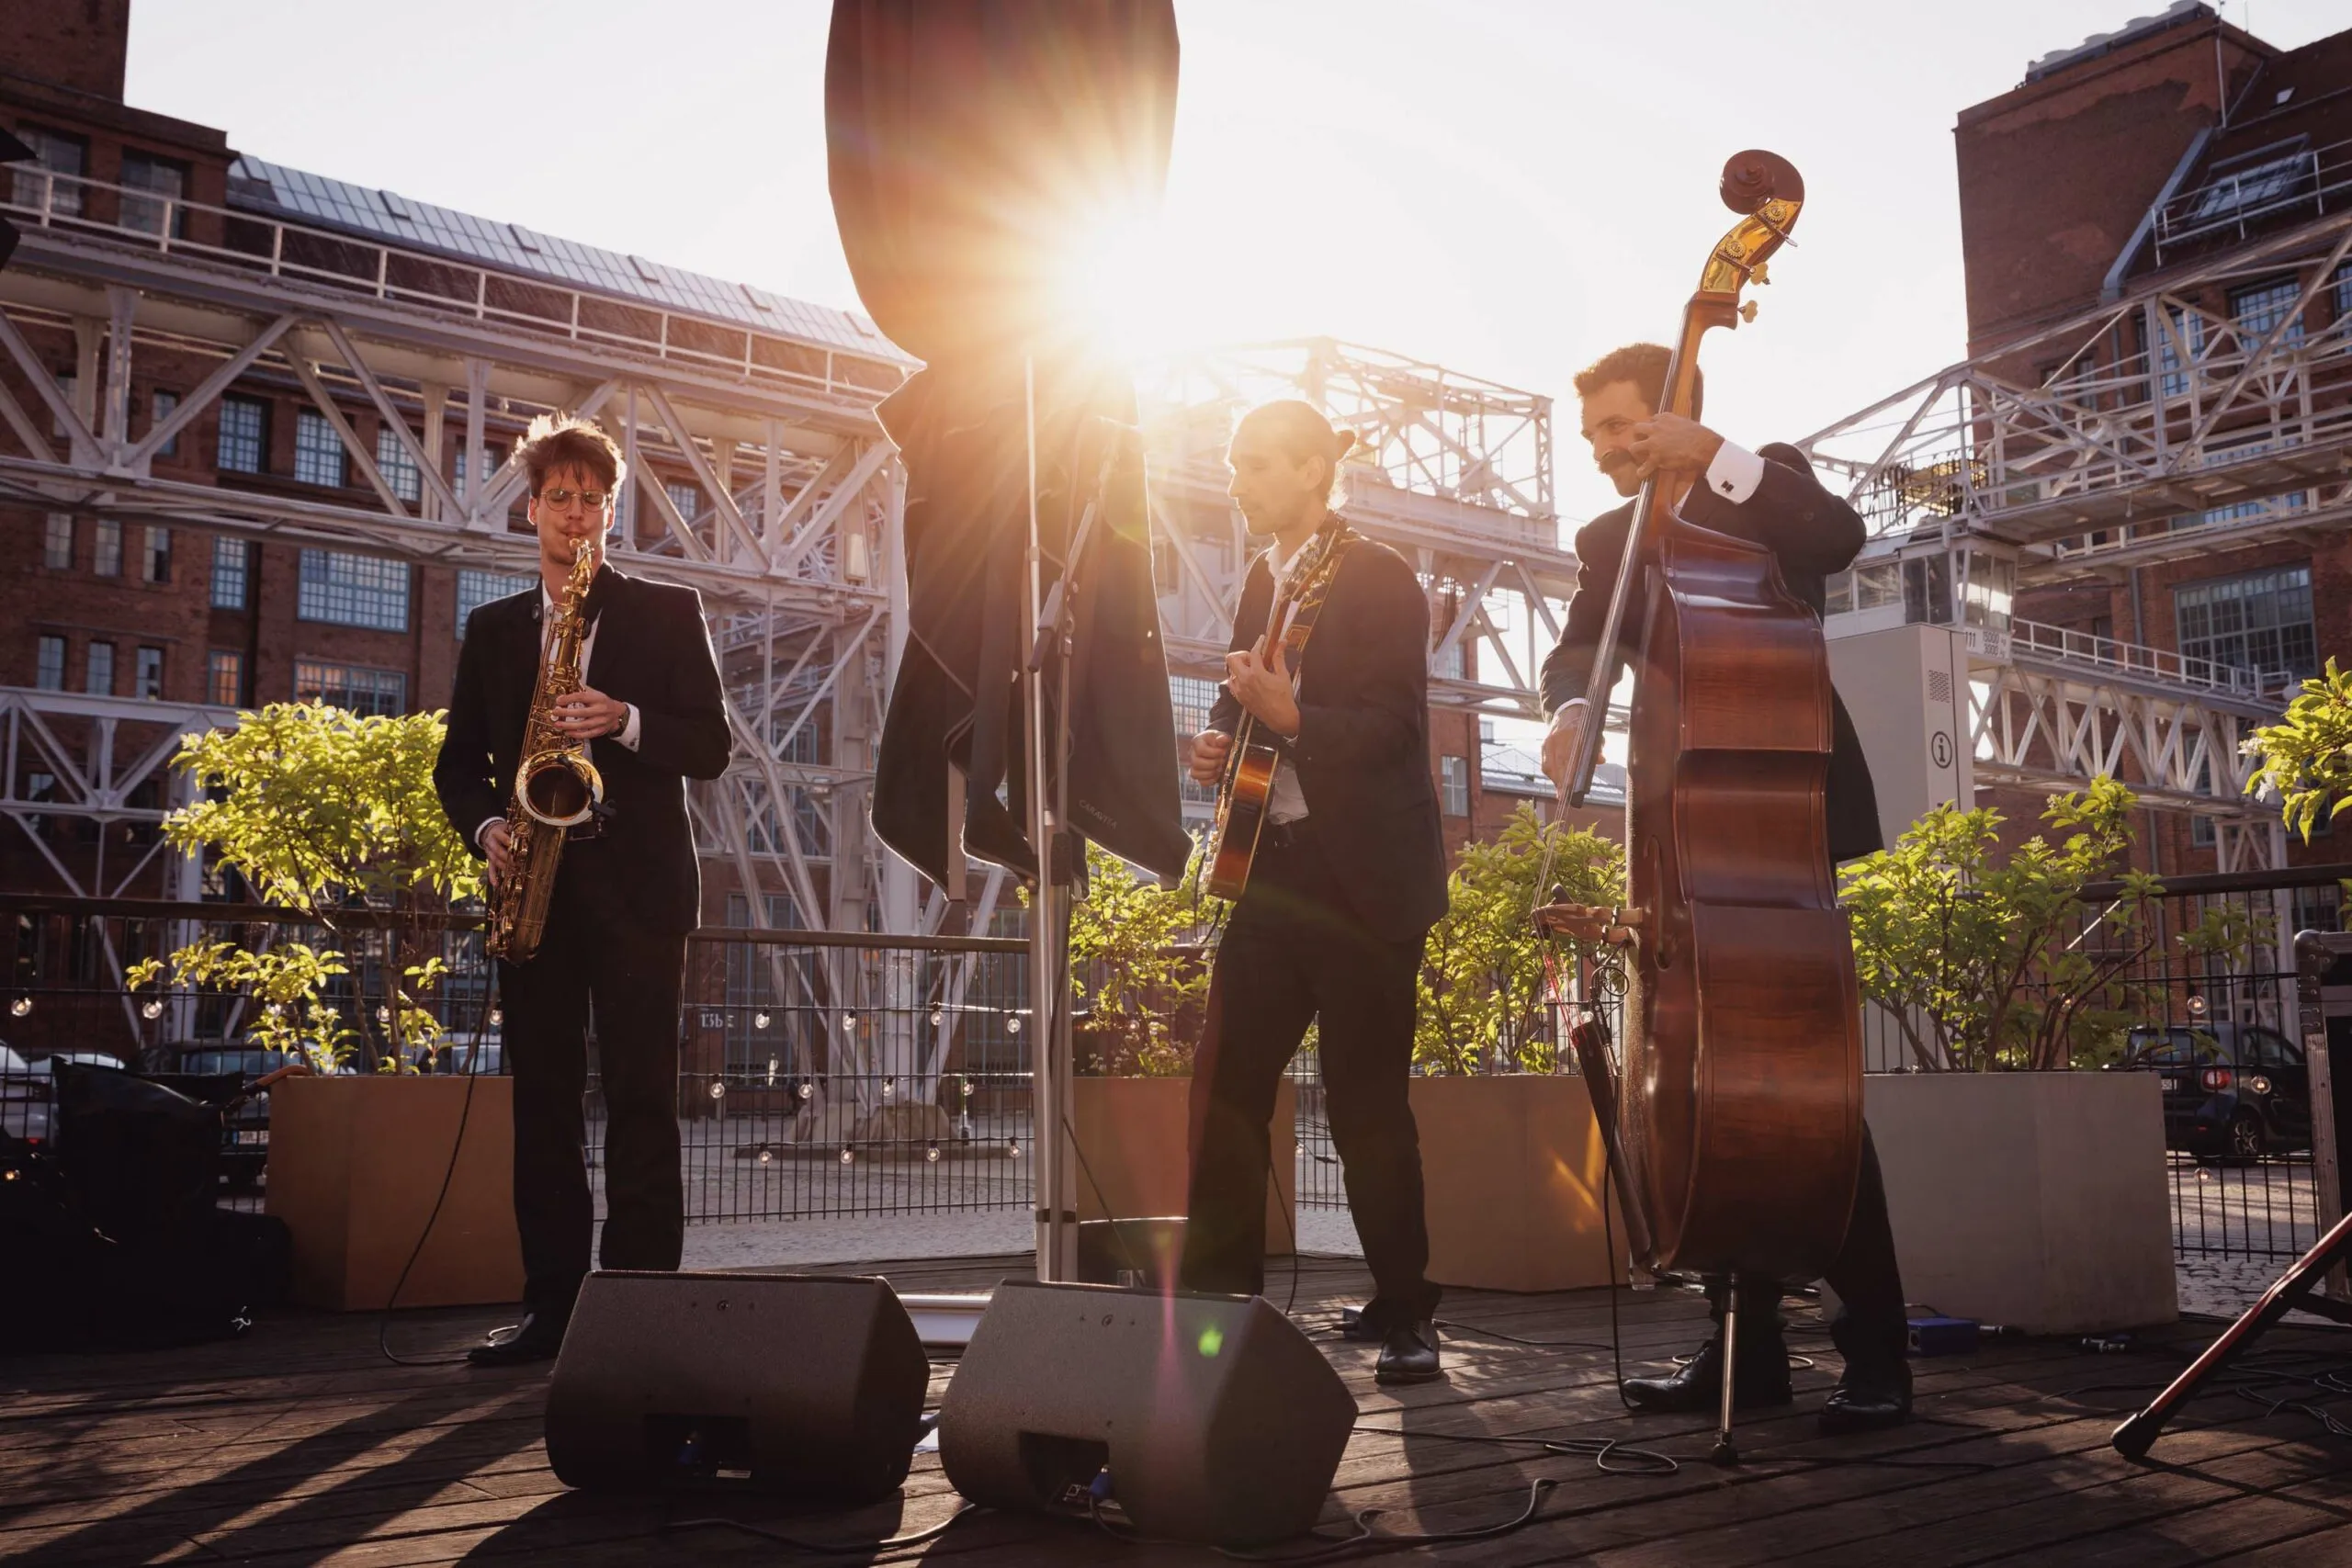 Eine Band aus drei Herren spielen auf verschiedenen Instrumenten in der Abendsonne eines Industriehofes. Einer spielt auf einem Saxophon, einer auf einer Gitarre und der dritte auf einem Kontrabass.